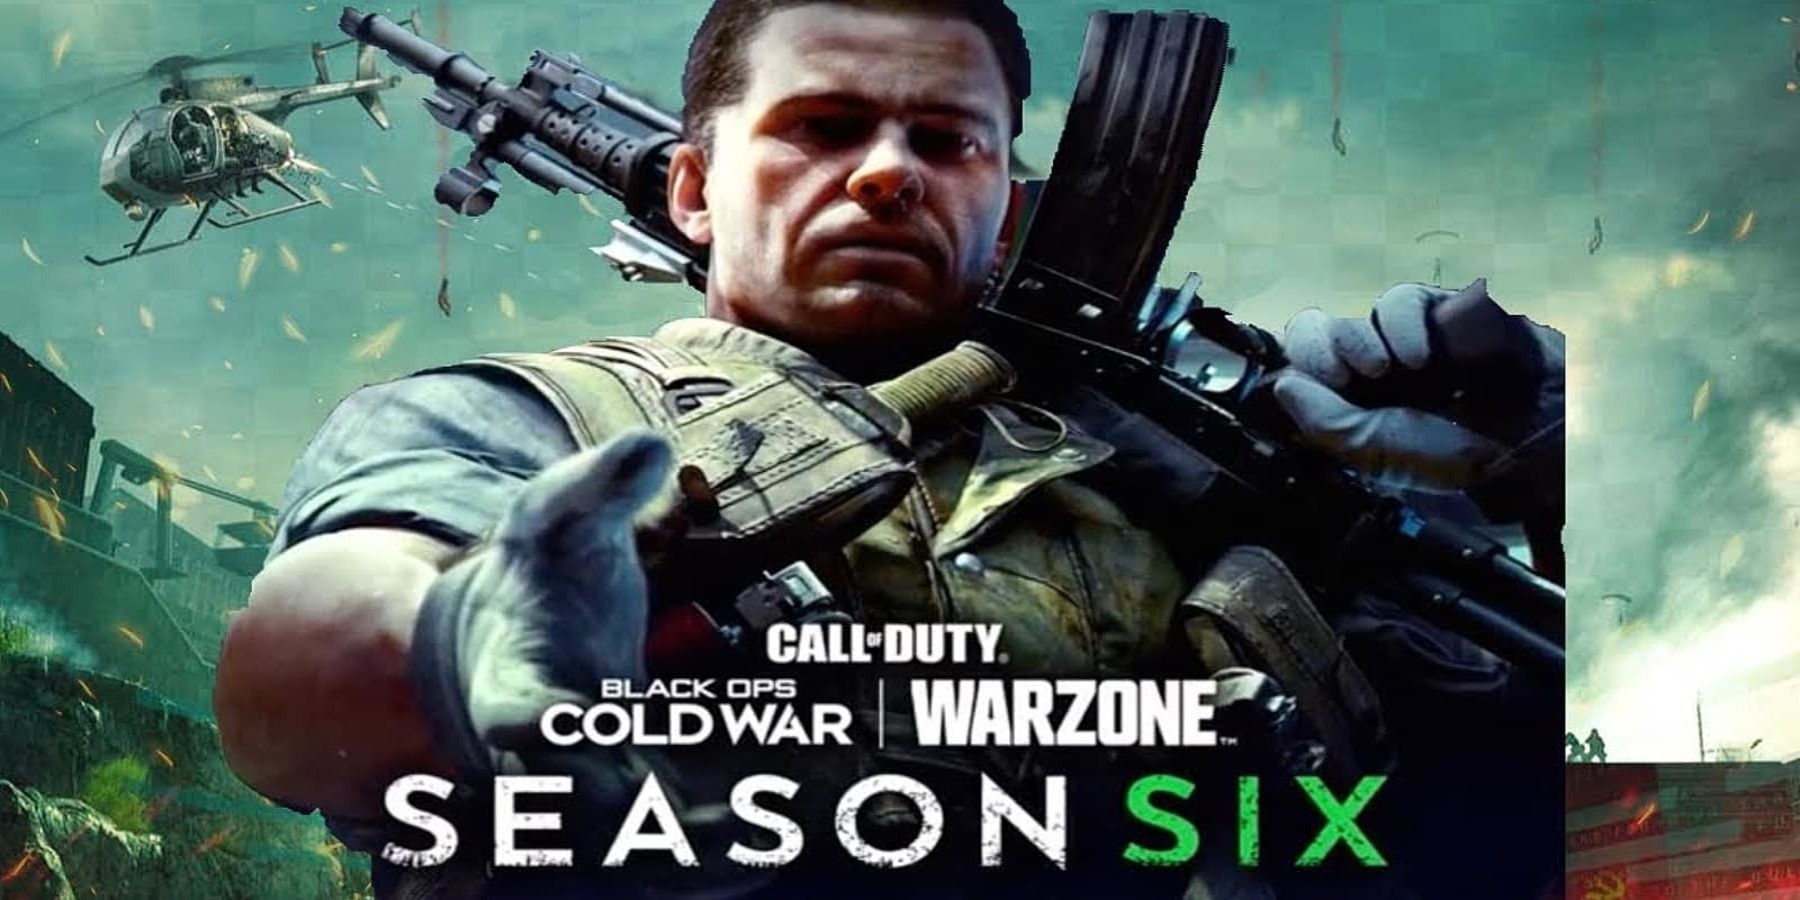 El tráiler de la temporada 6 de Call of Duty: Warzone promociona la confrontación final entre Adler y Stitch